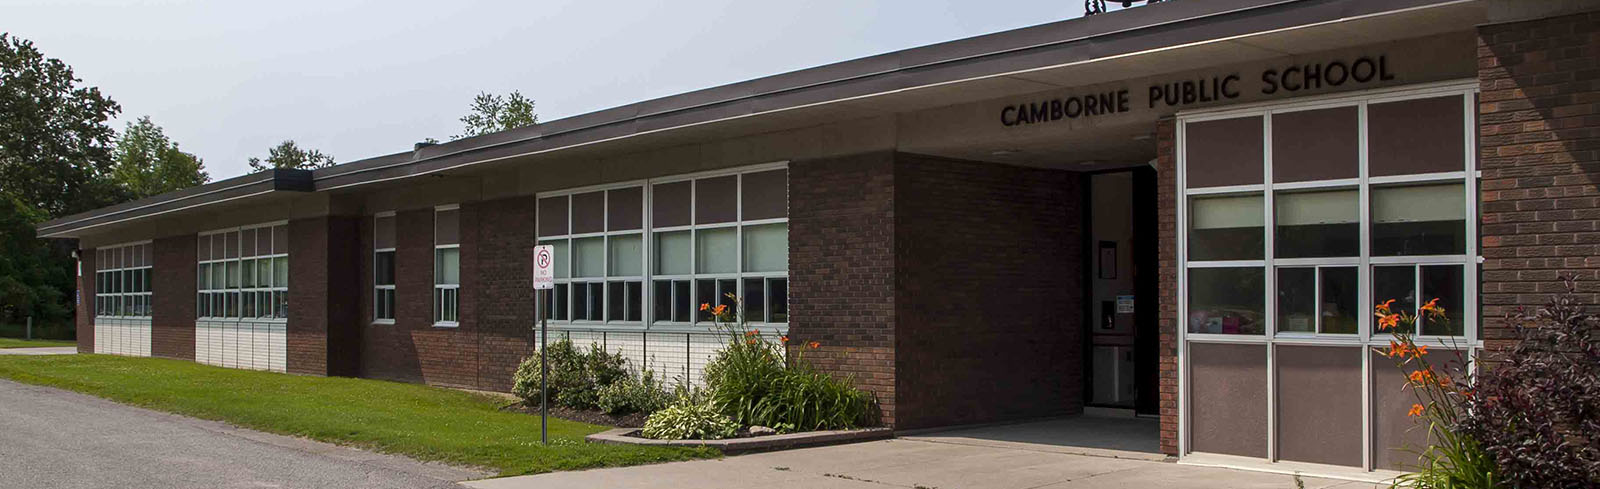 image of Camborne Public School